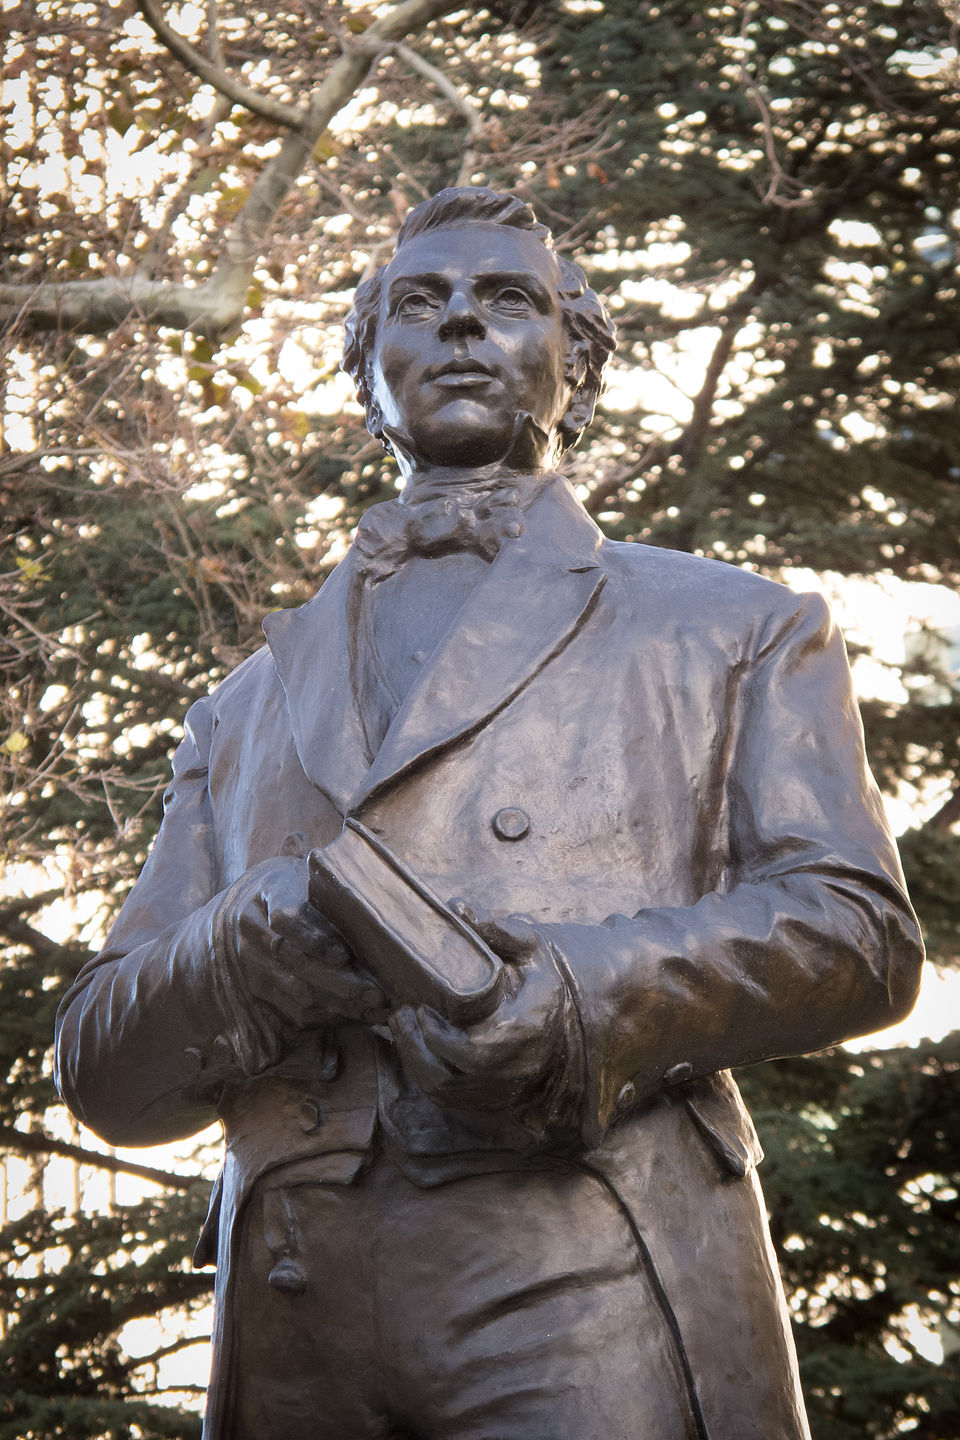 Joseph Smith statue at Temple Square